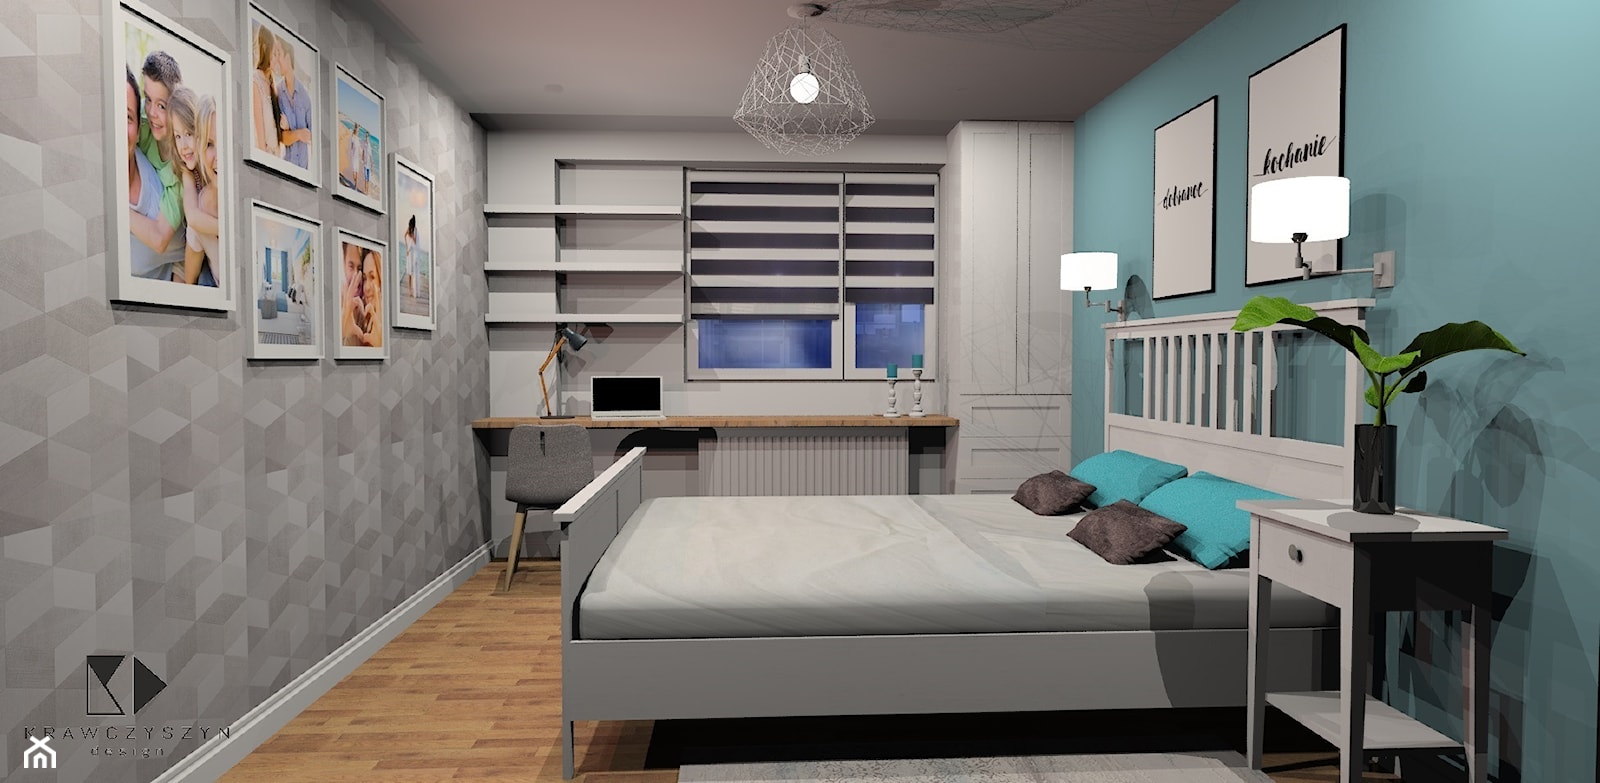 Biała sypialnia z niebieskim kolorem w tle - zdjęcie od Krawczyszyn-design - Homebook